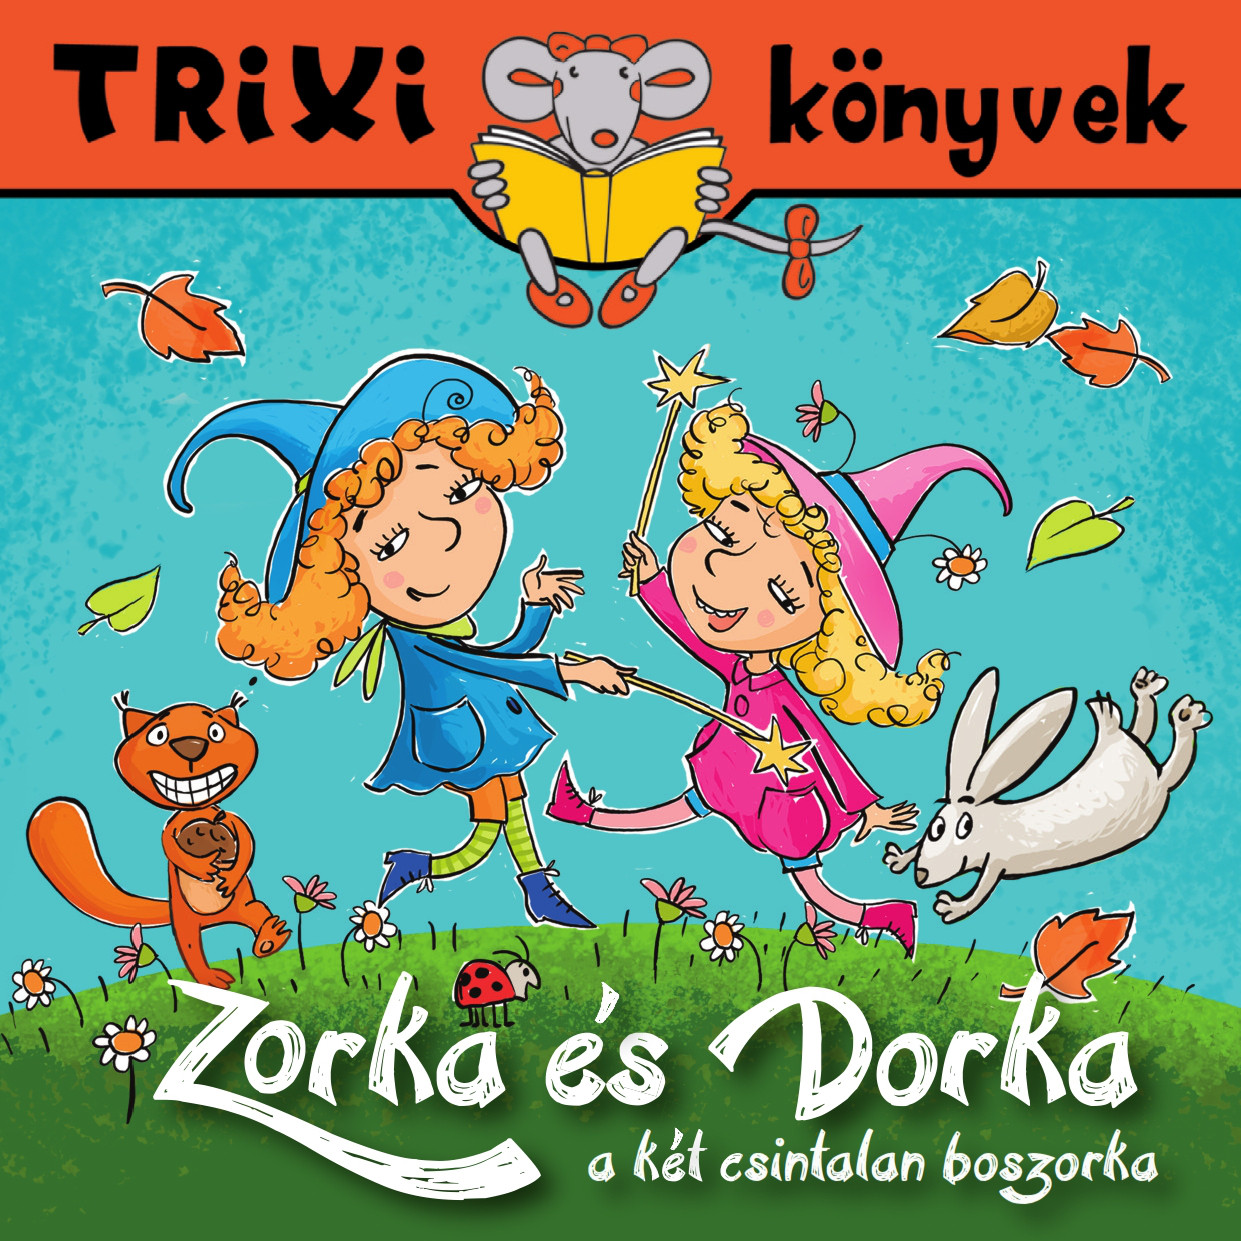 Zorka és Dorka a két csintalan boszorka